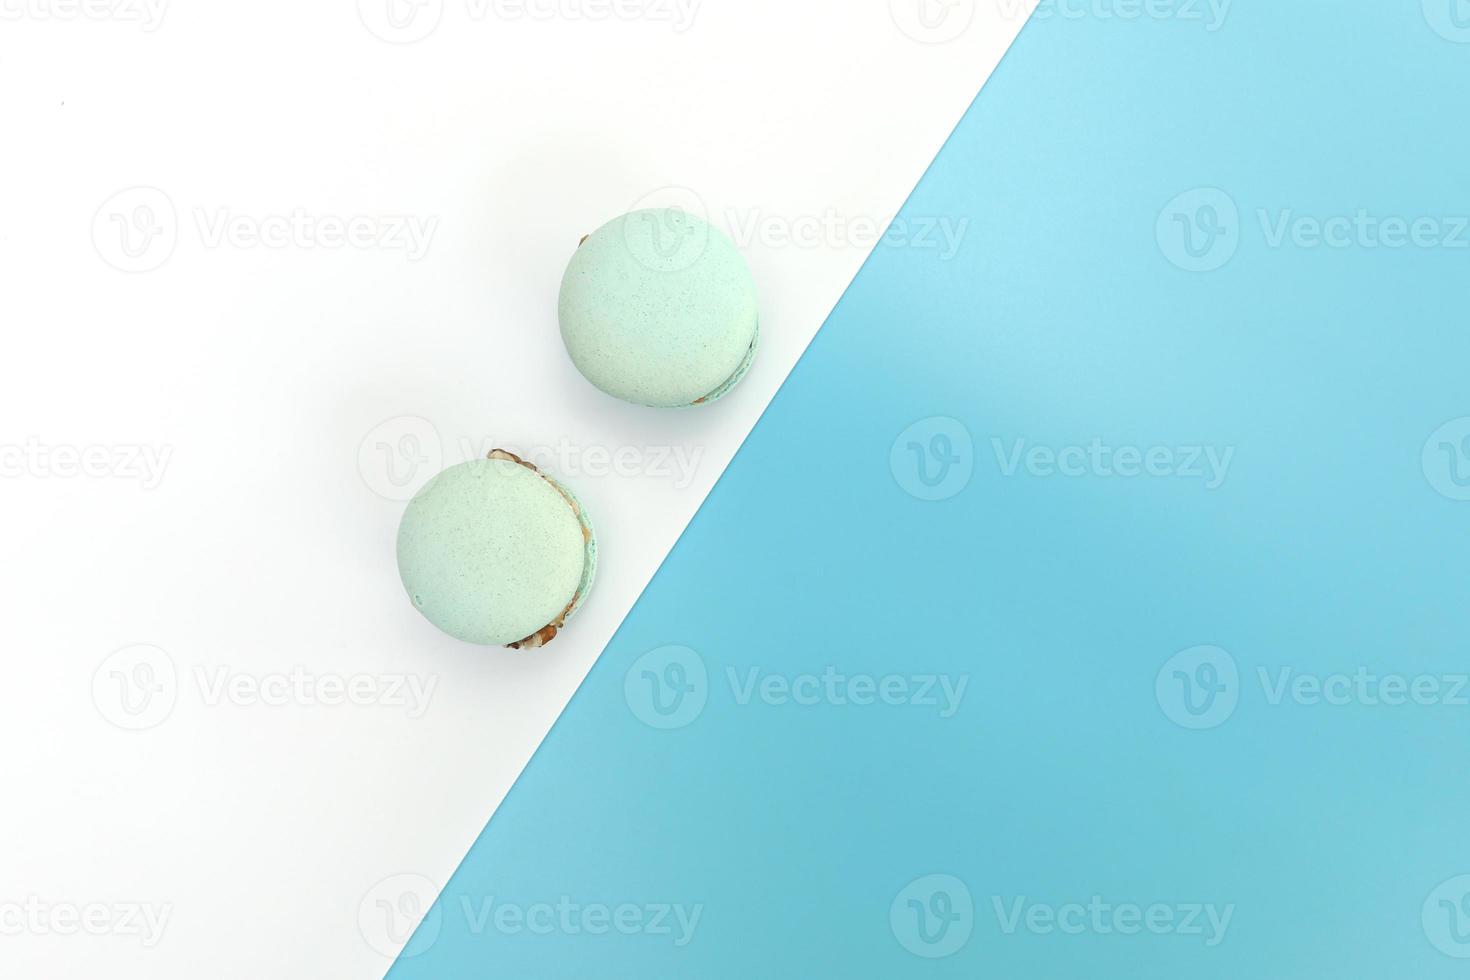 Leckere blaue französische Macarons oder Makronen auf weißem und blauem Hintergrund. Platz für Texte. Farbgeometrie foto